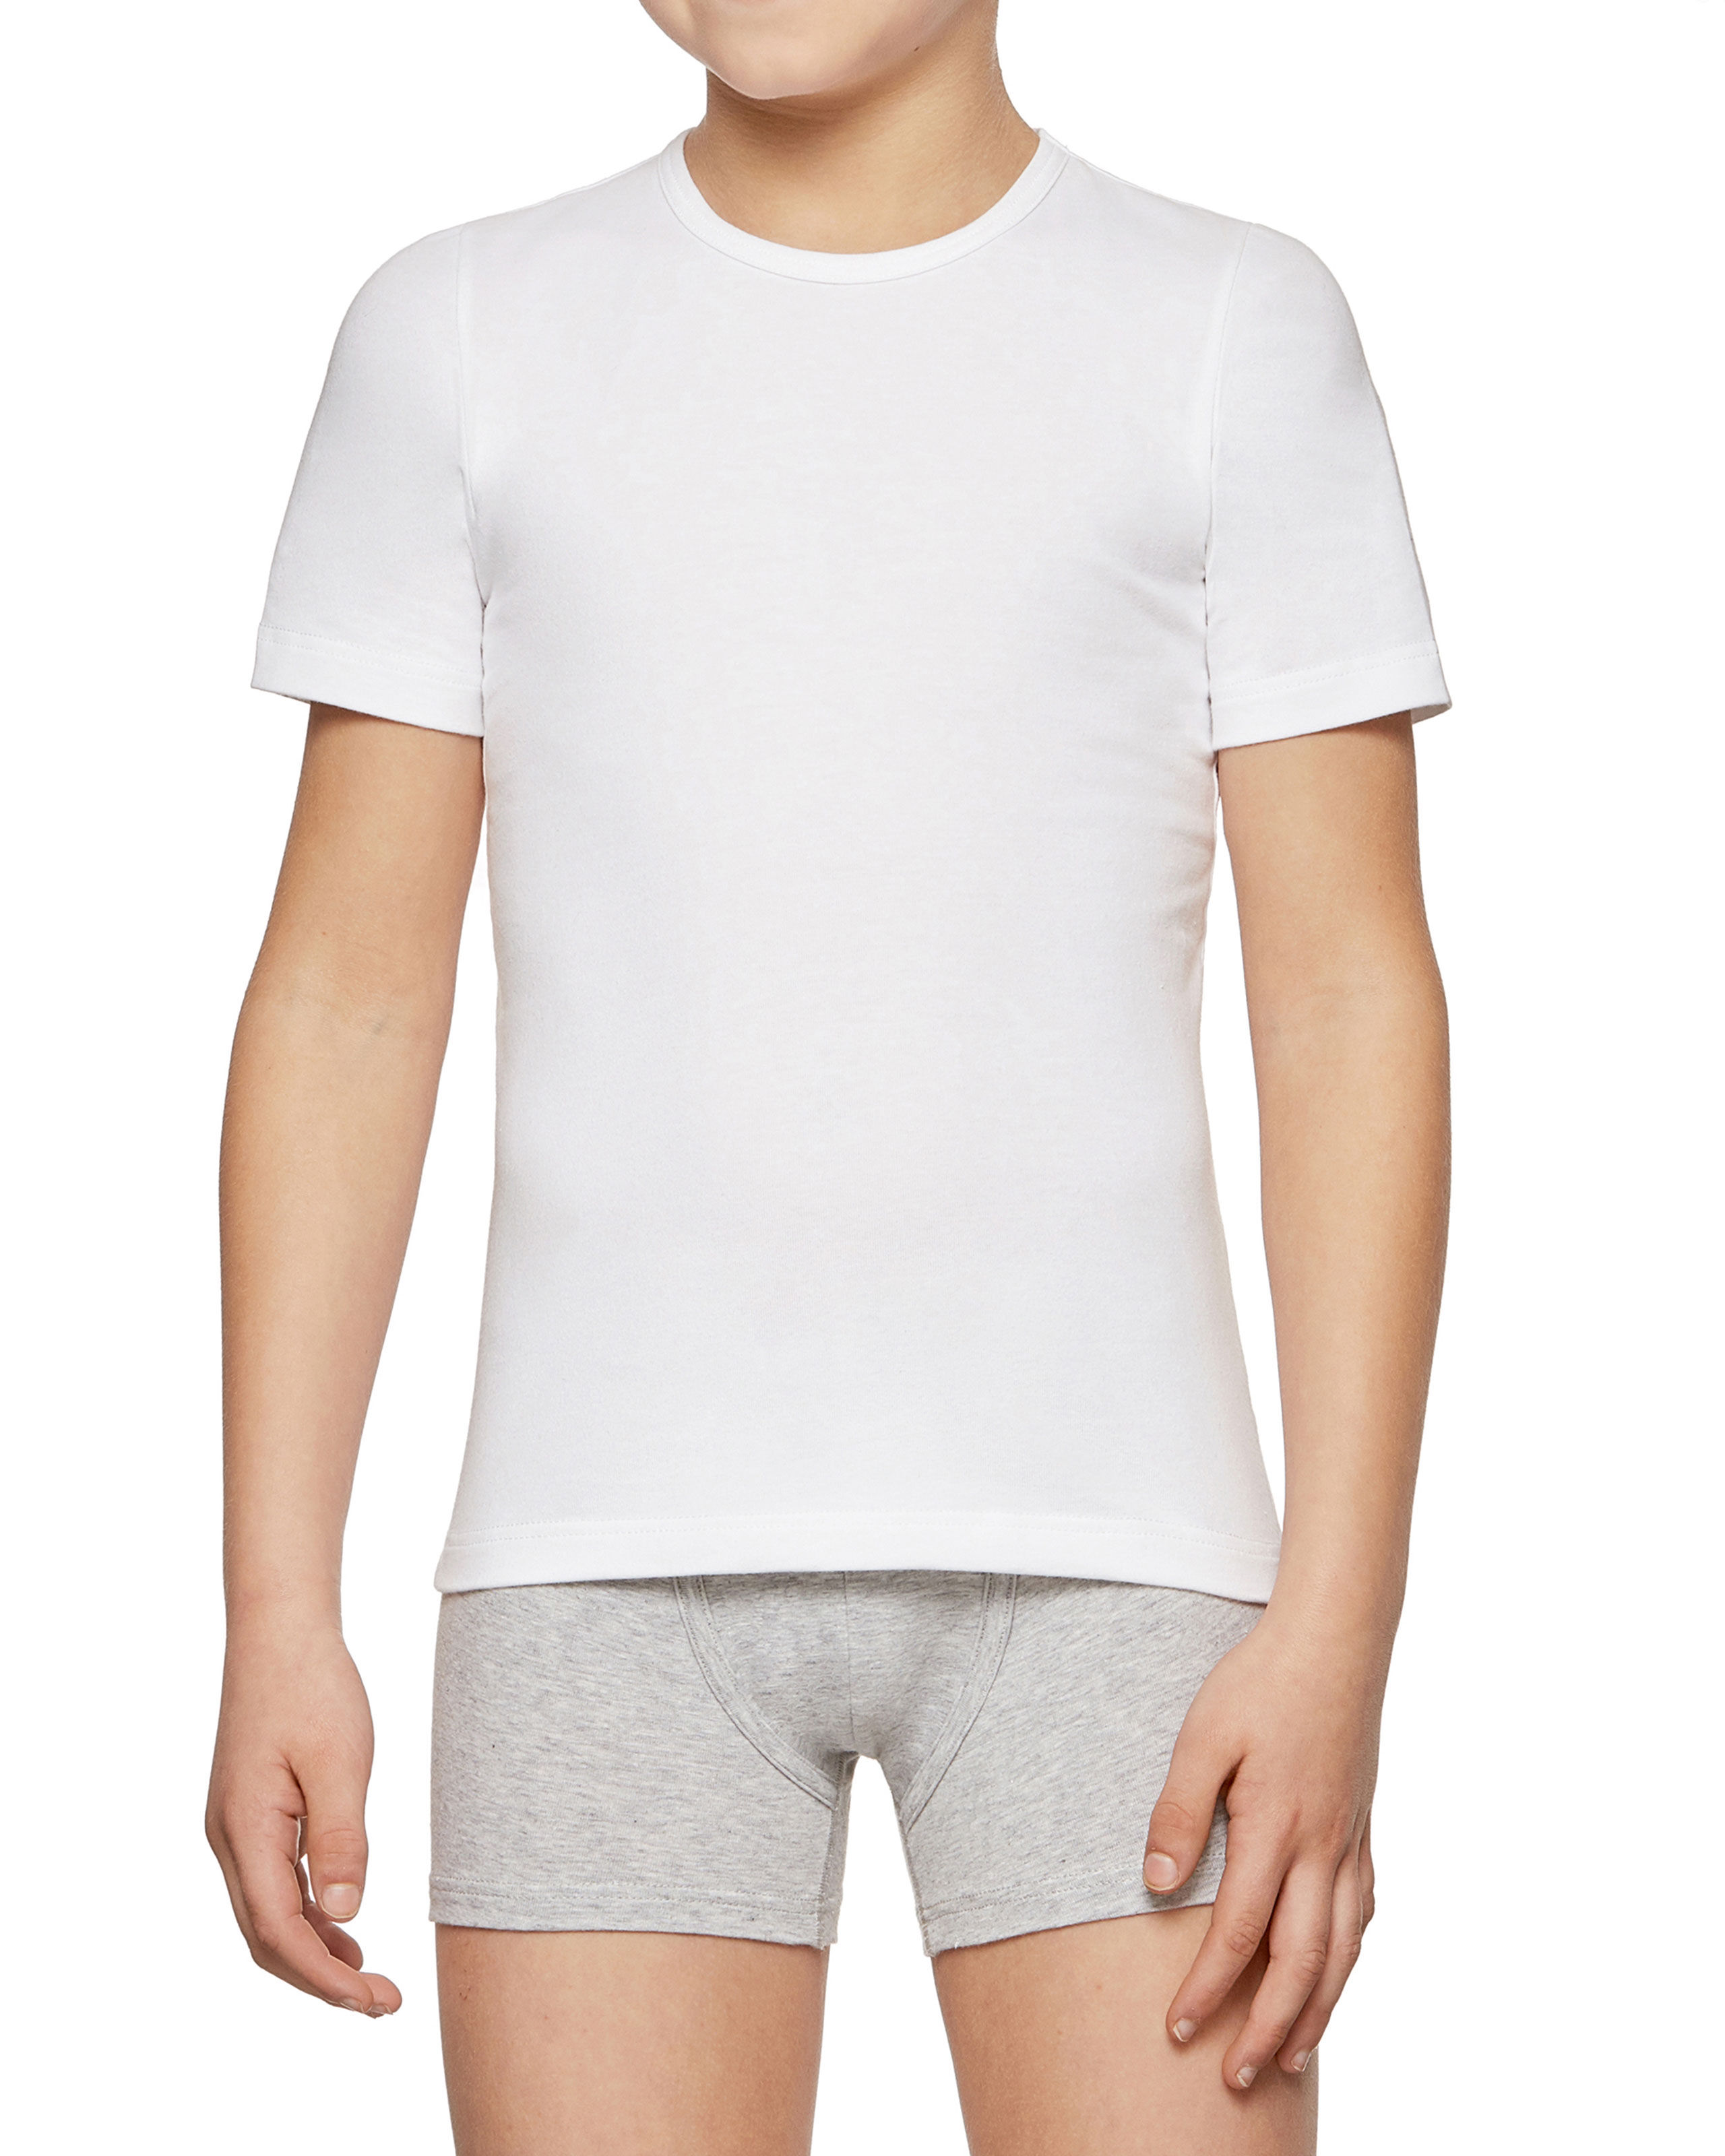 IMPETUS T-shirt de niño en algodón biológico Blanco (10 años)